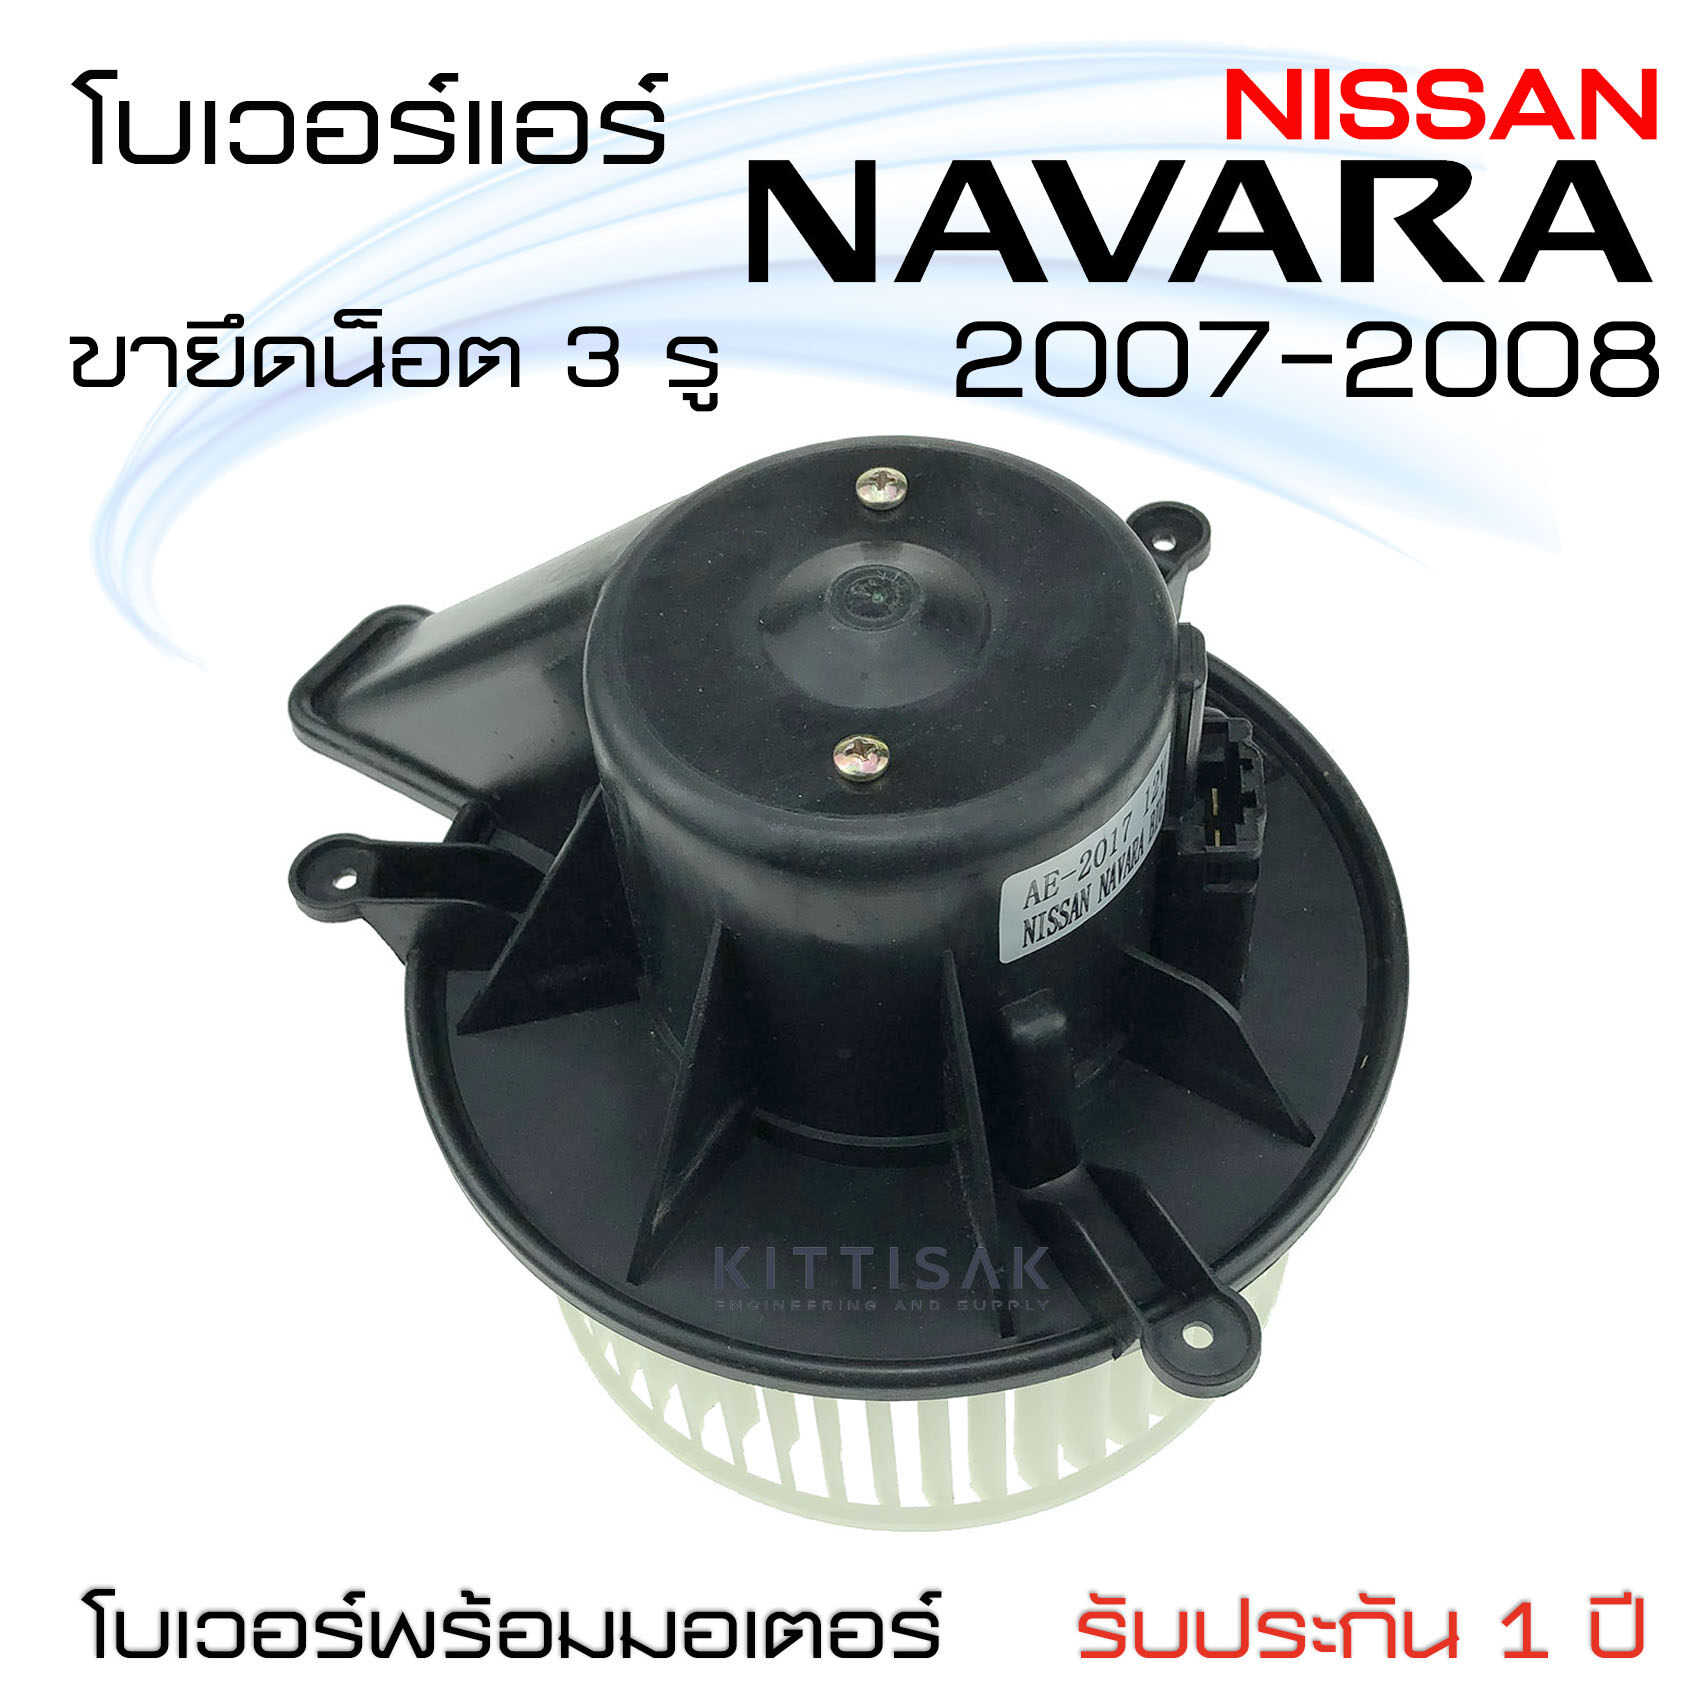 โบเวอร์แอร์ รถยนต์  นิสสัน นาวาร่า  2007 - 2008 (จุดยึดน็อต 3 จุด) Blower Motor NAVARA  ปี 2007 - 2008 โบลเวอร์แอร์ โบว์เวอร์แอร์ พัดลมแอร์ โบเวอร์